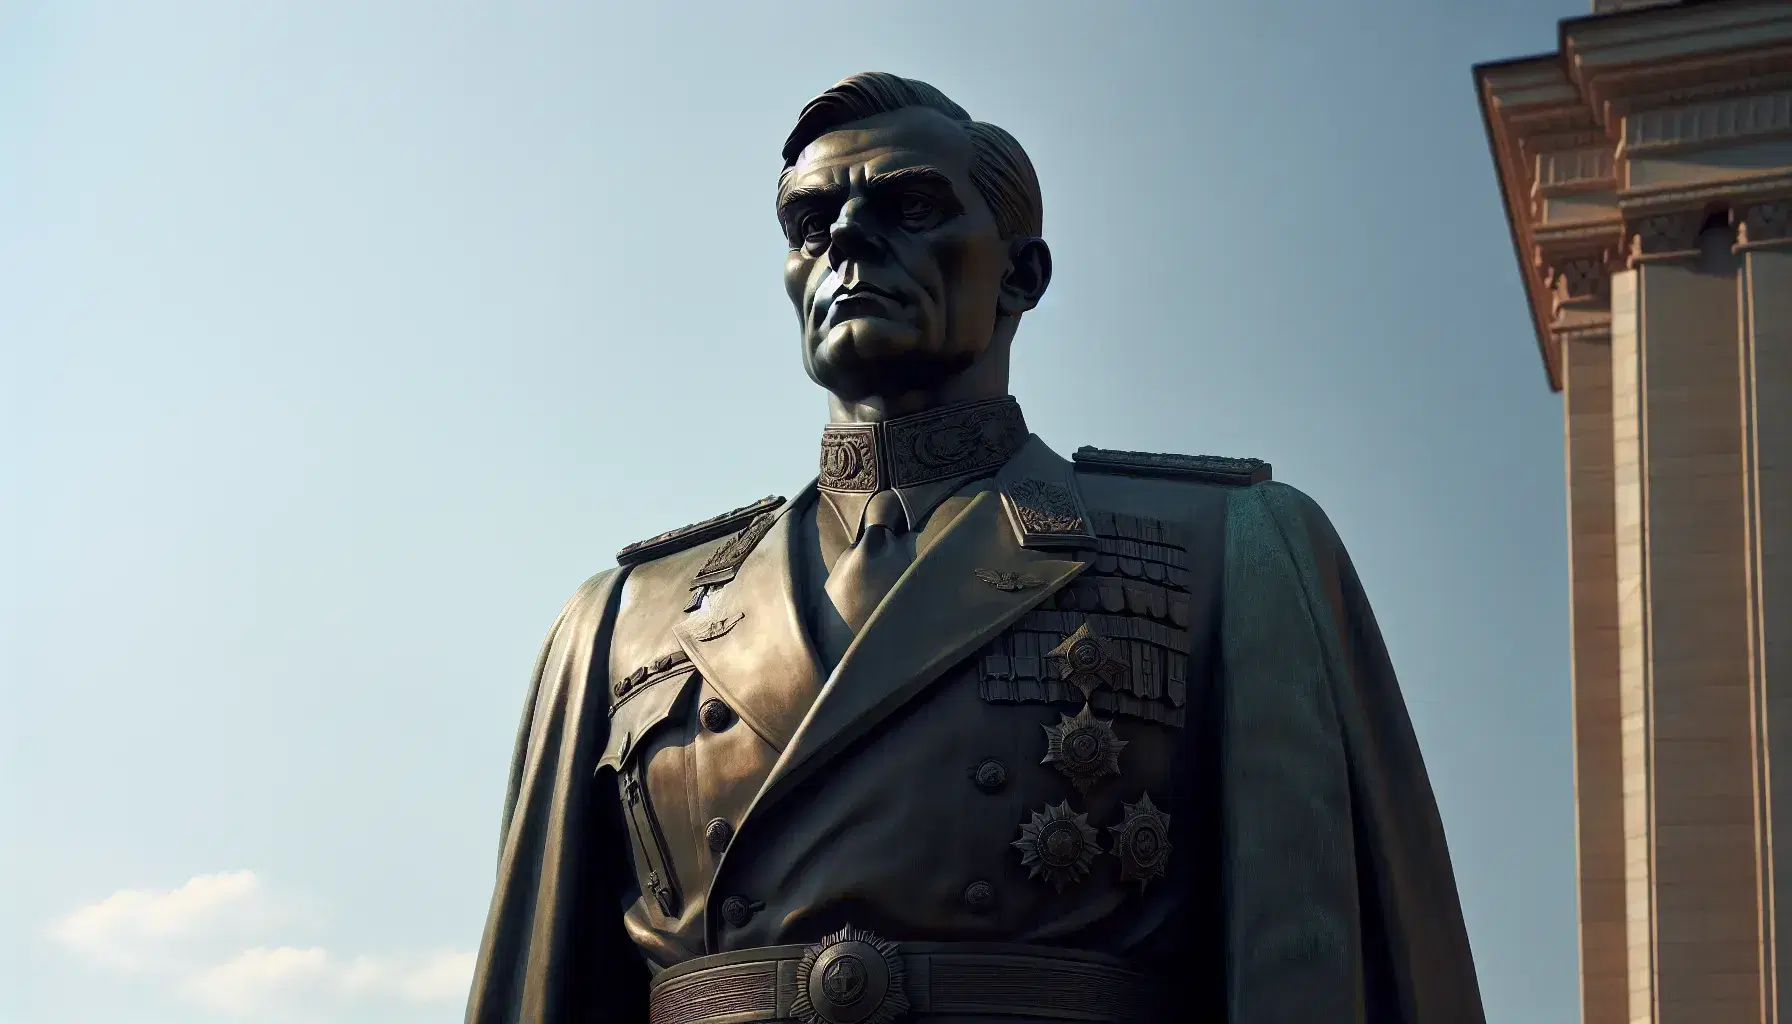 Estatua de bronce de hombre en uniforme militar con medallas, mostrando una expresión seria y dominante, bajo un cielo despejado.